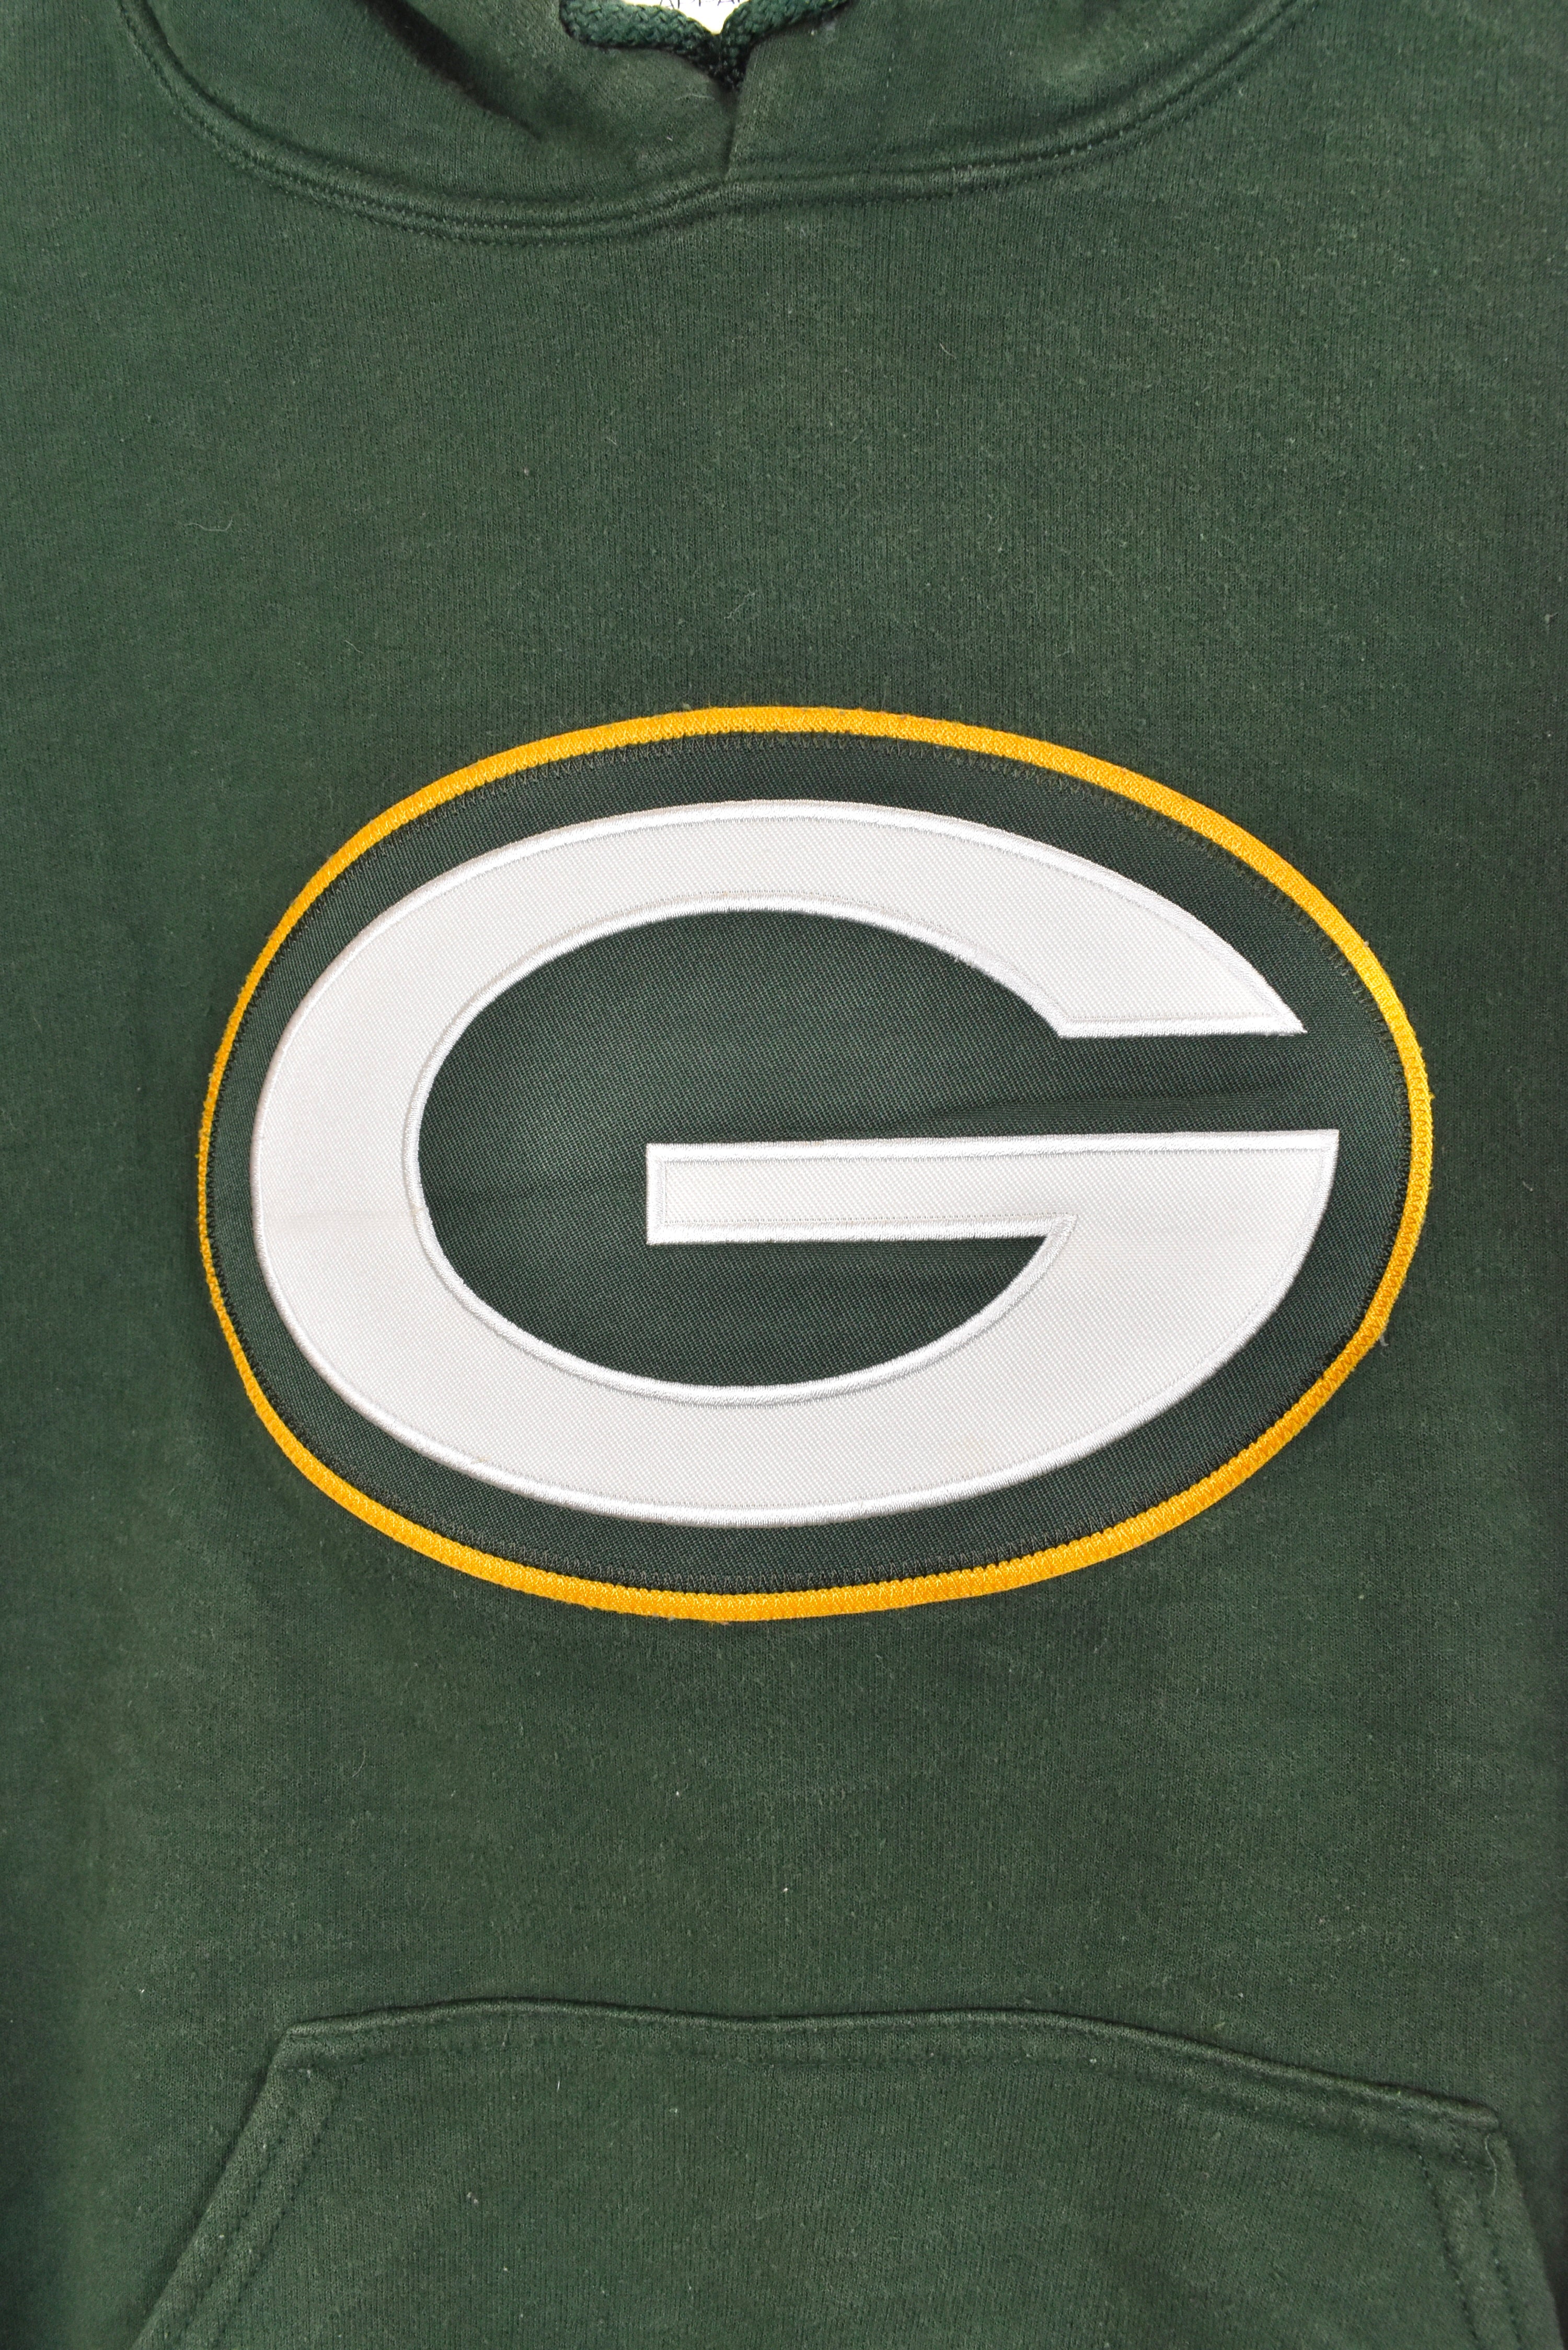 Vintage Green Bay Packers hoodie, NFL green embroidered sweatshirt - AU Medium PRO SPORT